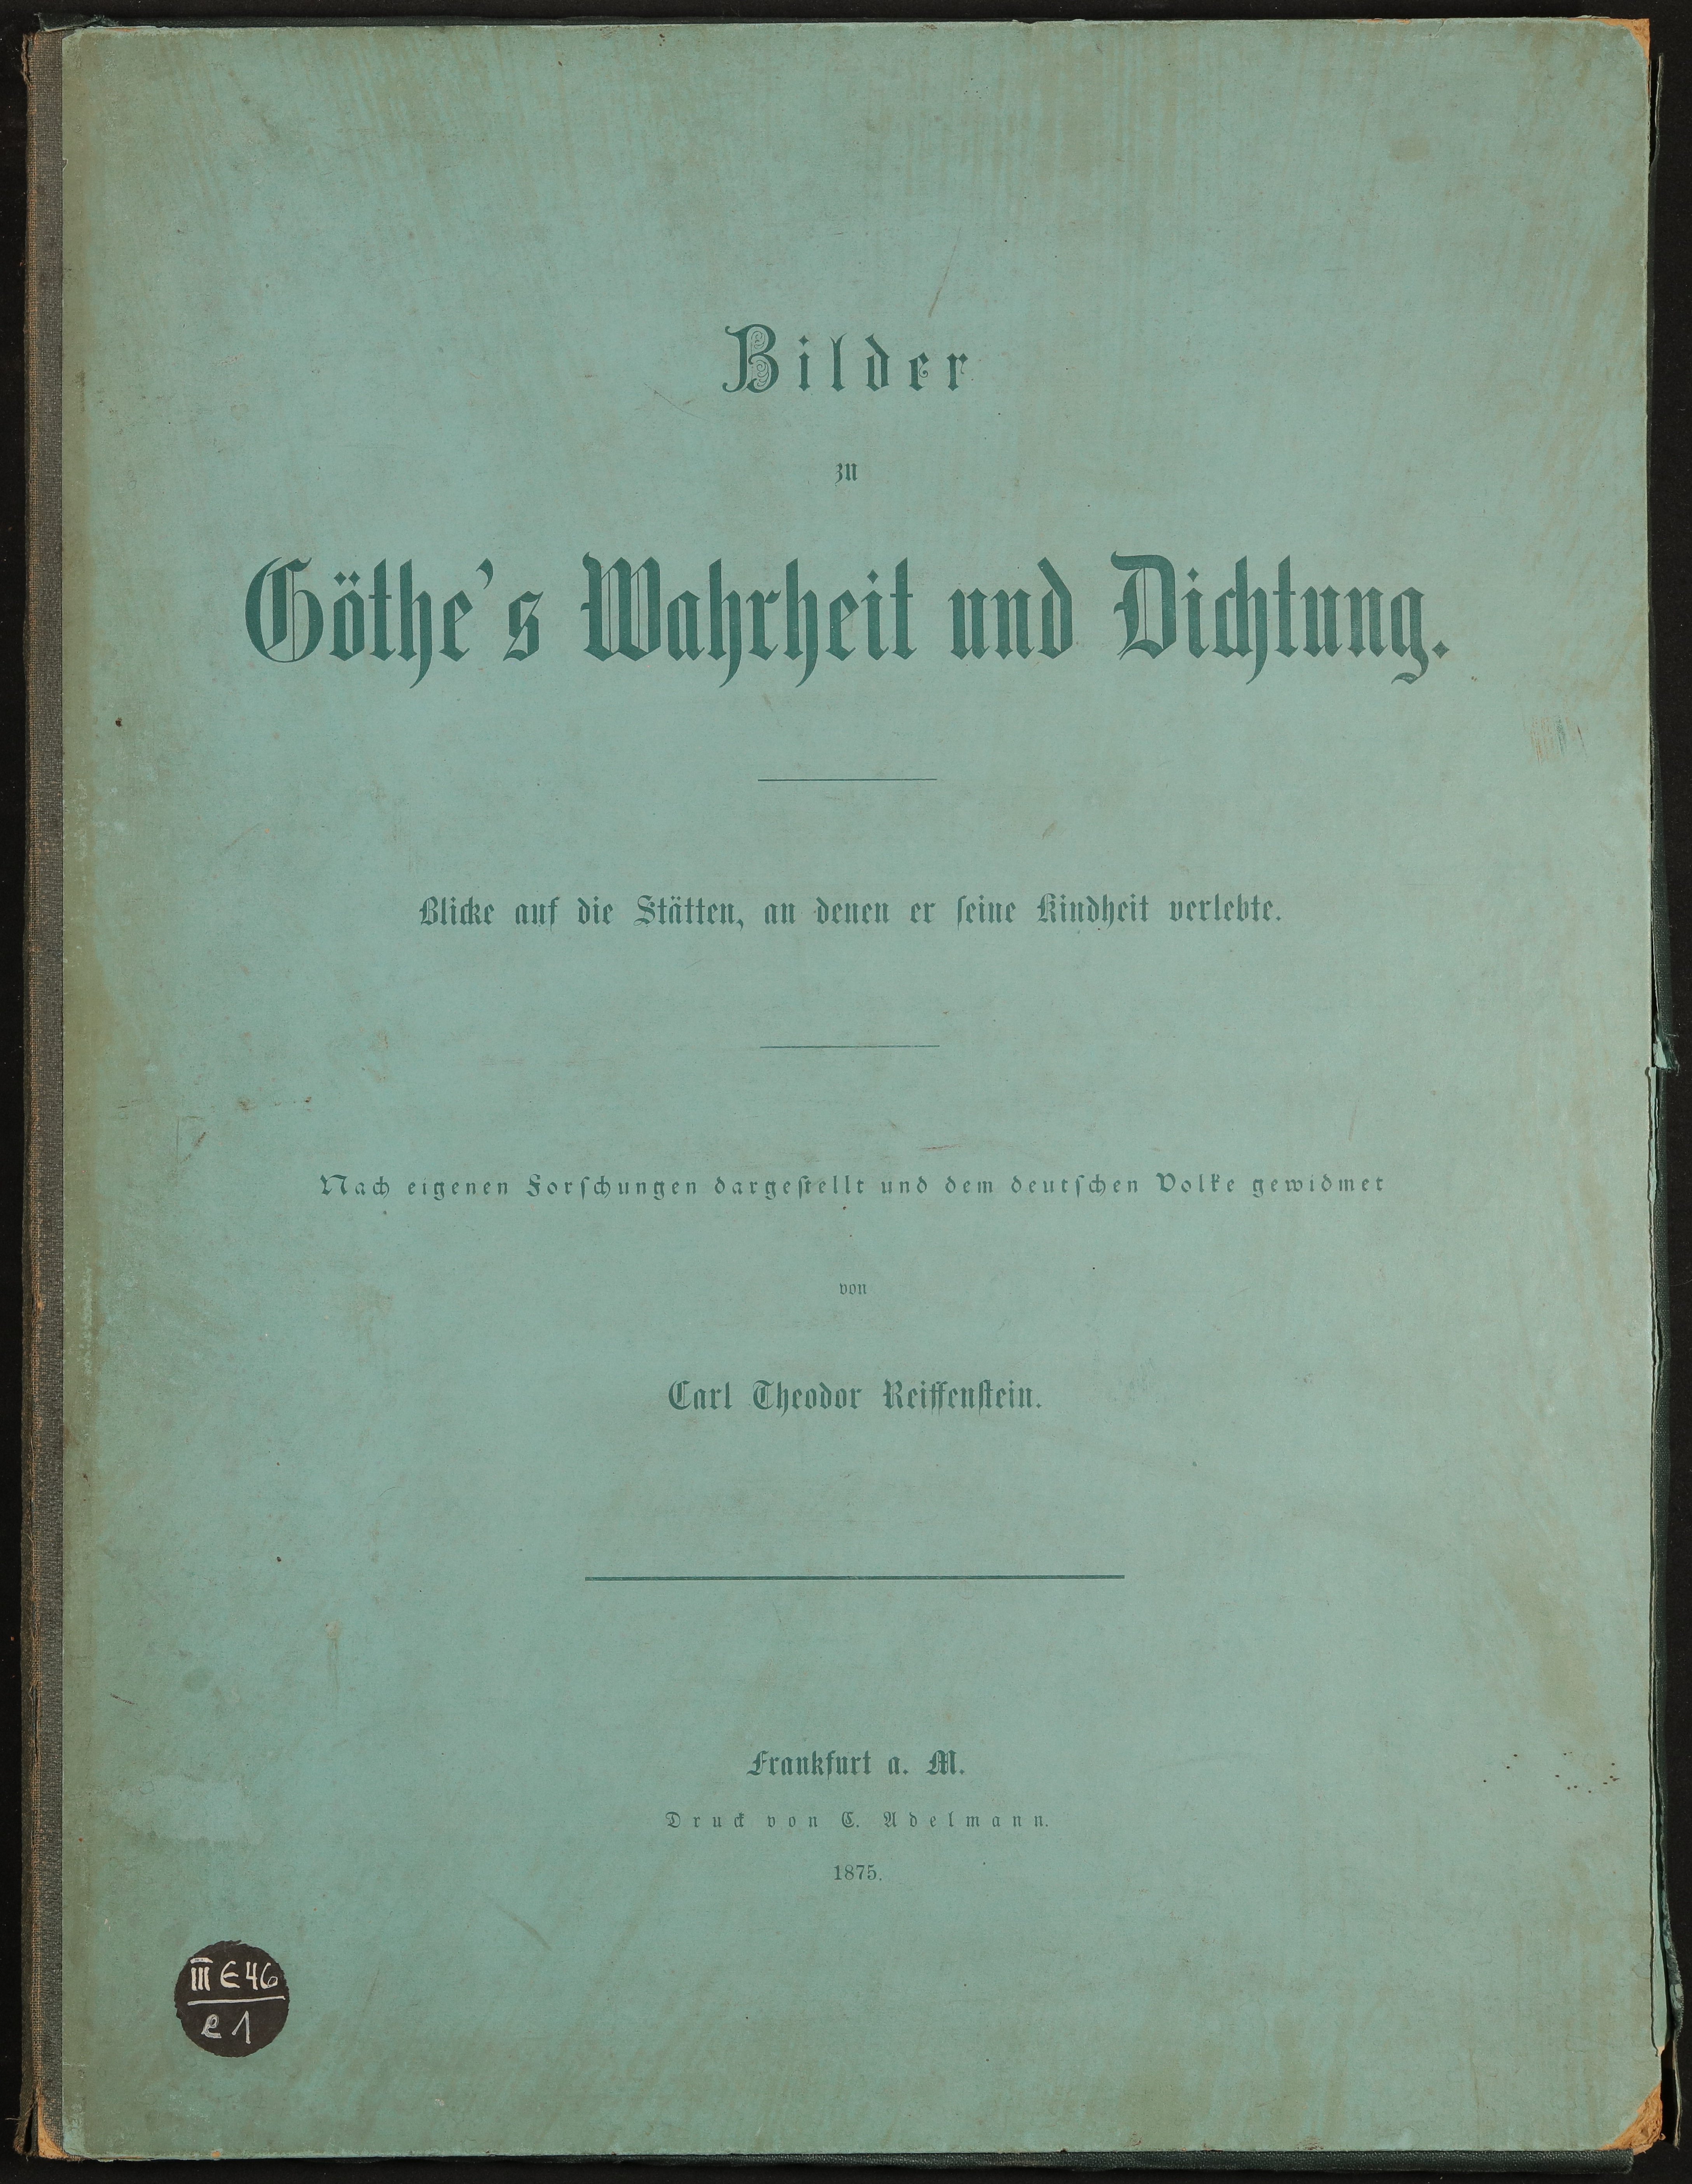 II E 46 e 1 (Freies Deutsches Hochstift / Frankfurter Goethe-Museum Public Domain Mark)